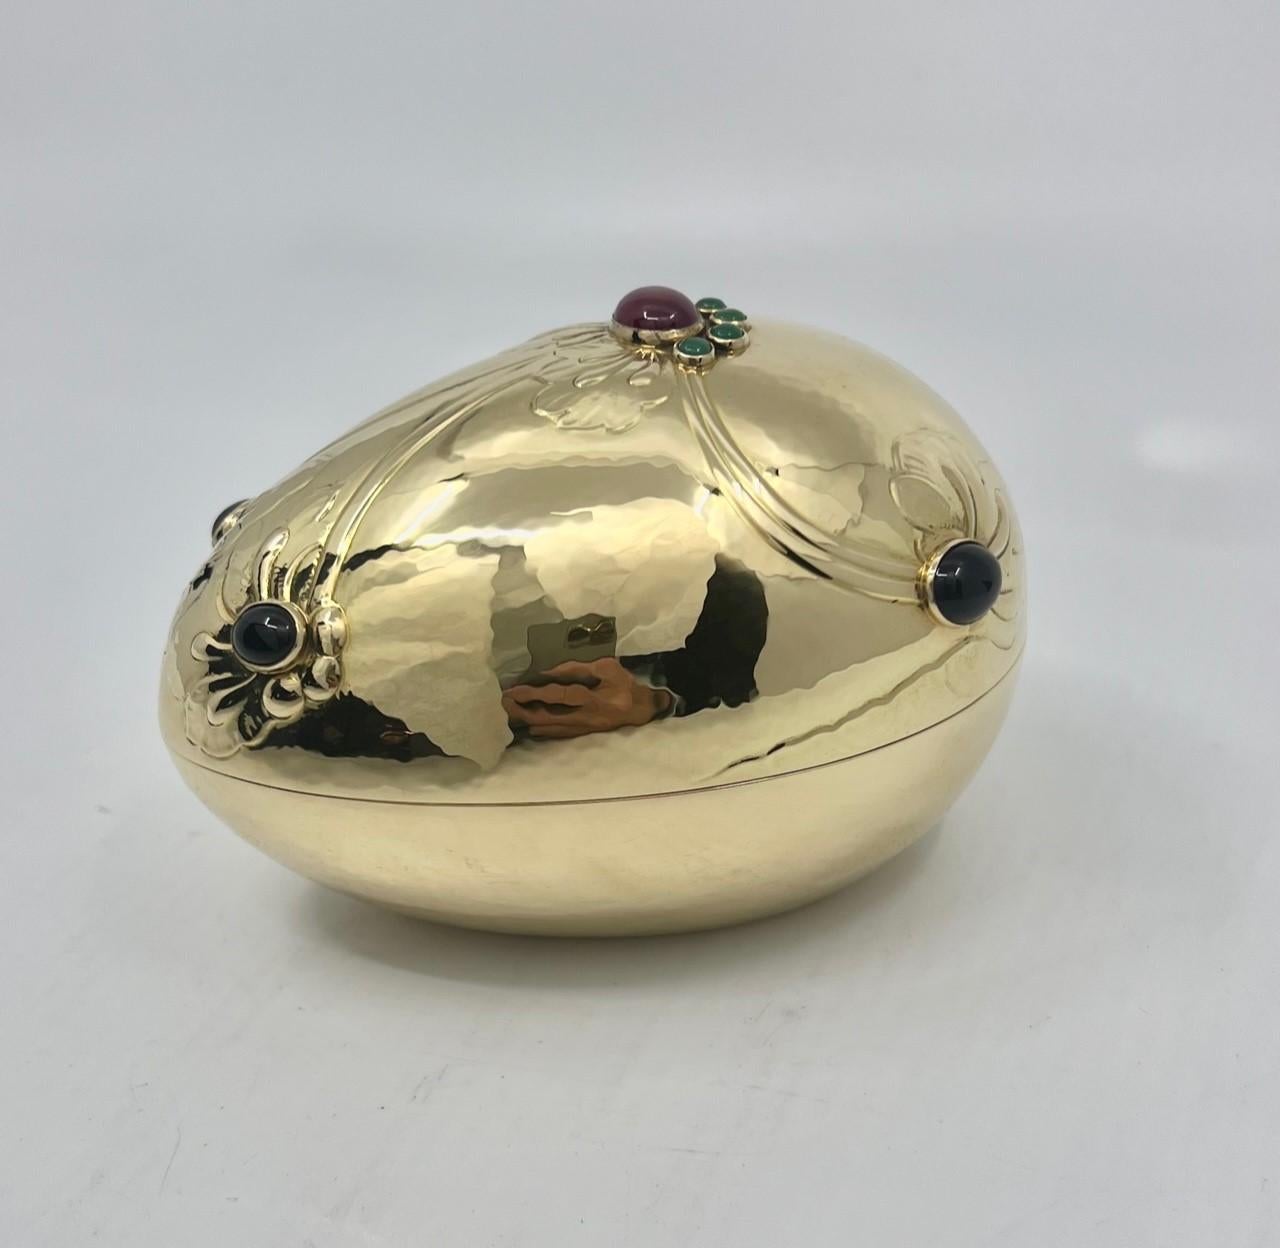 Die seltene Bonbonnière von Georg Jensen aus 18-karätigem Gold ist ein exquisites Schmuckstück, das die Wohnung mit Eleganz und Charme schmückt. Diese Bonbonniere ist ein Zeugnis der sorgfältigen Handwerkskunst von Georg Jensen, einem renommierten